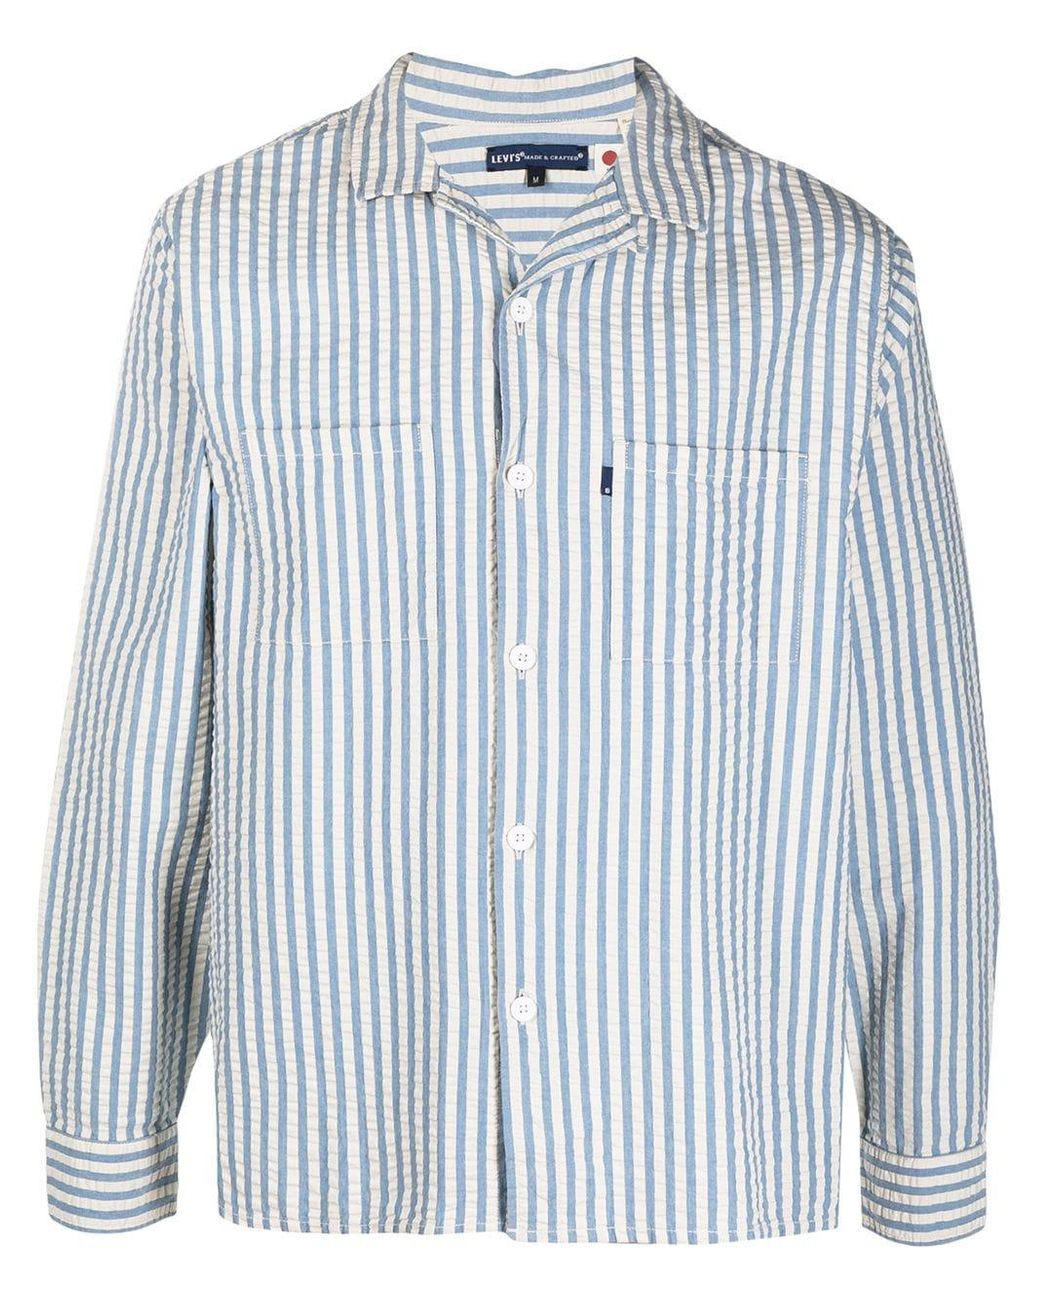 Levi's Seersucker Striped Long-sleeve Shirt in Blue for Men - Lyst